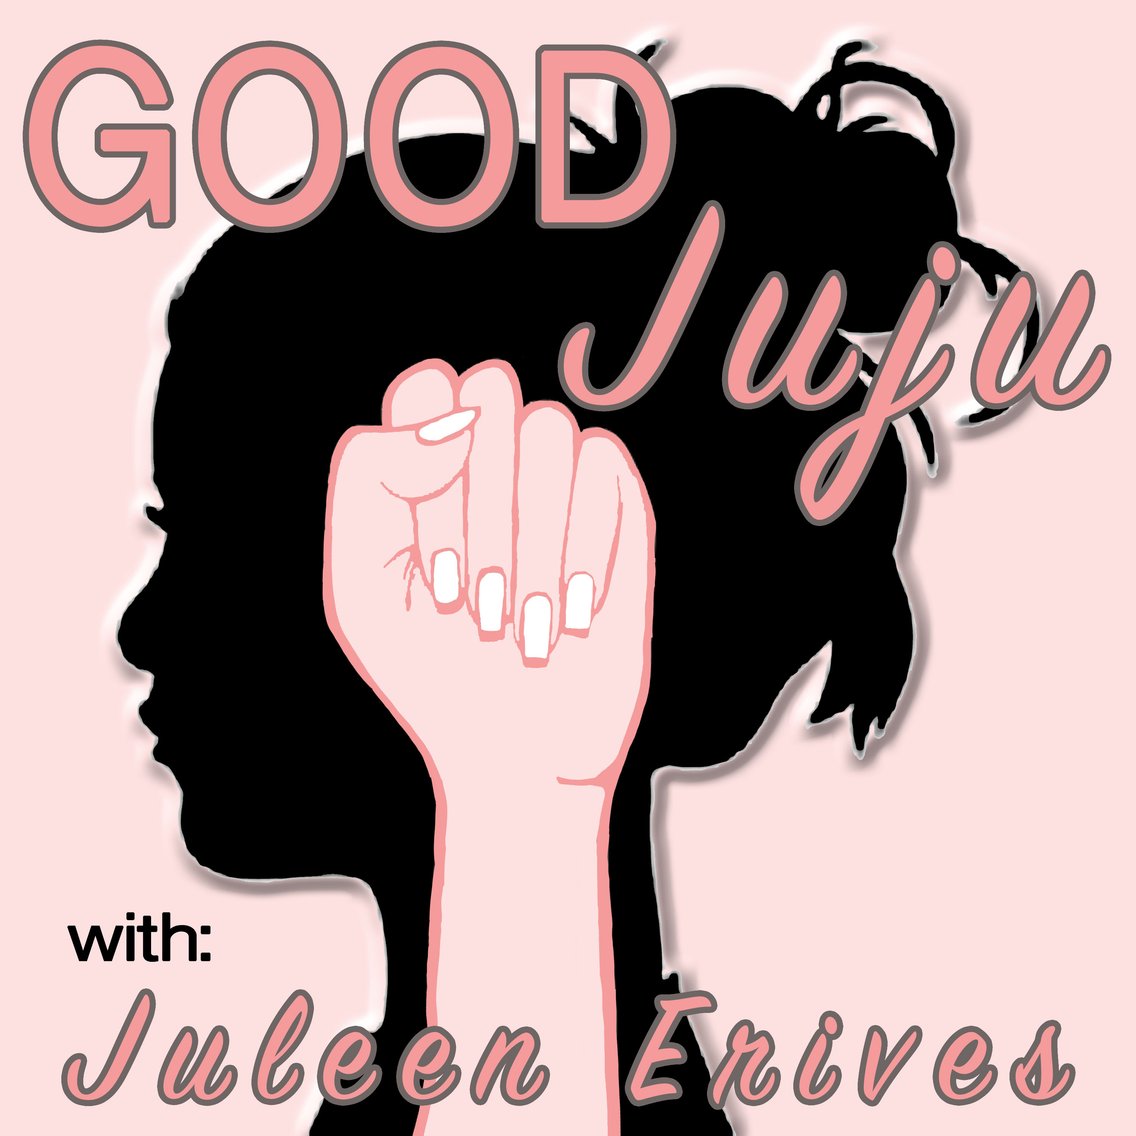 Good Juju with Juleen Erives - immagine di copertina
